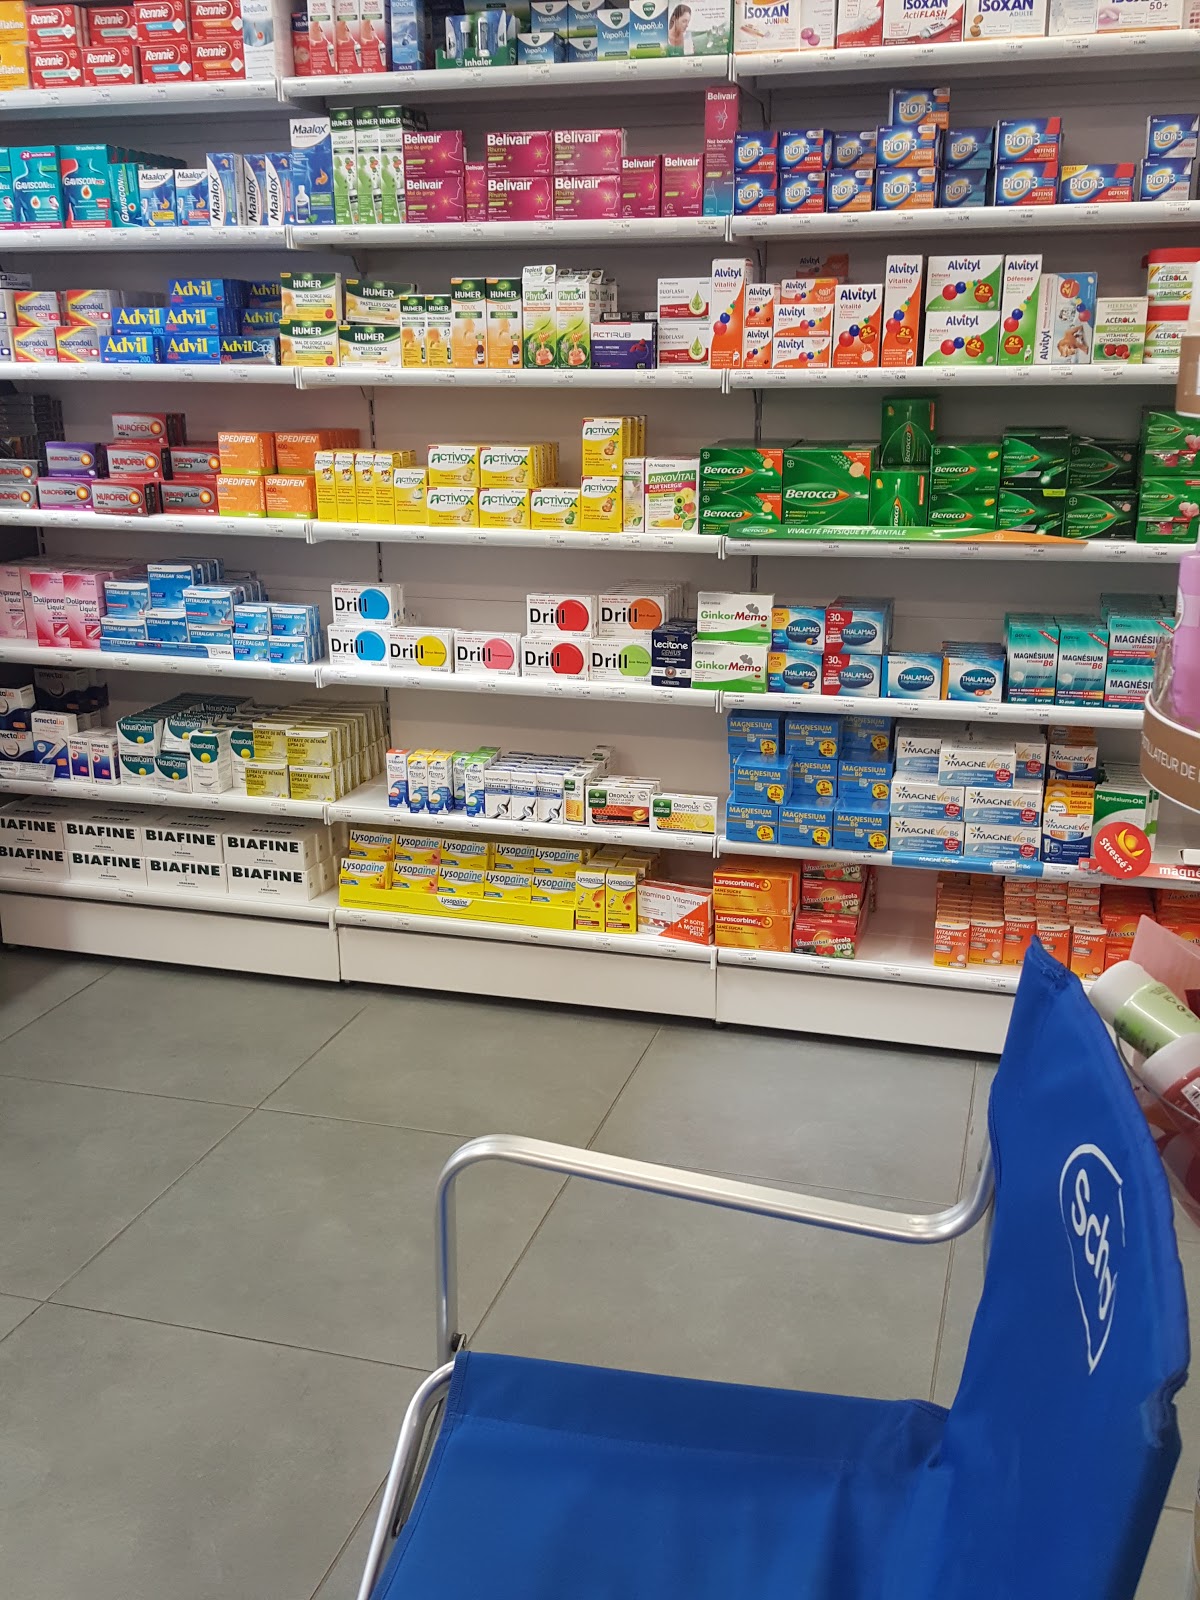 Pharmacie de Camargue